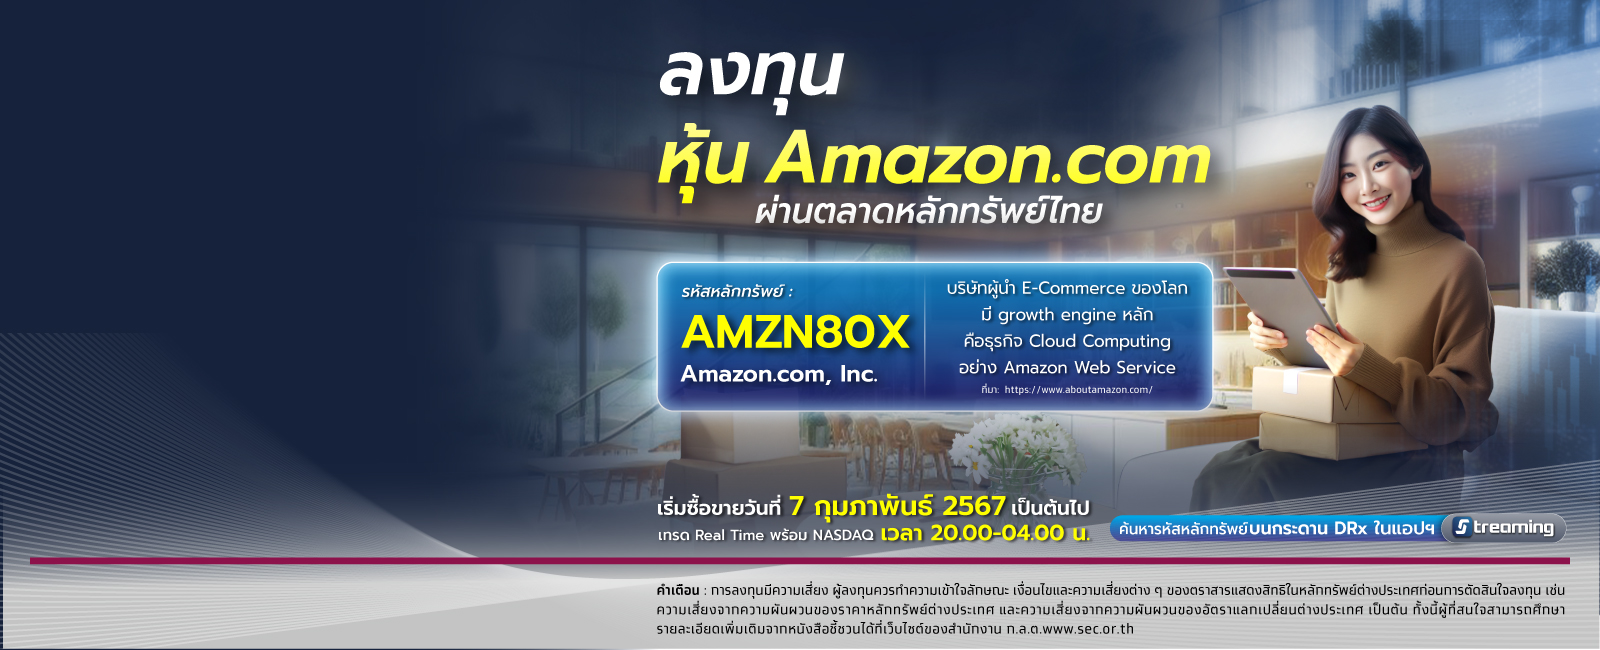 หุ้น DR - Amazon.com คืออะไร ต้องรู้ก่อนลงทุนหุ้นต่างประเทศ desktop banner